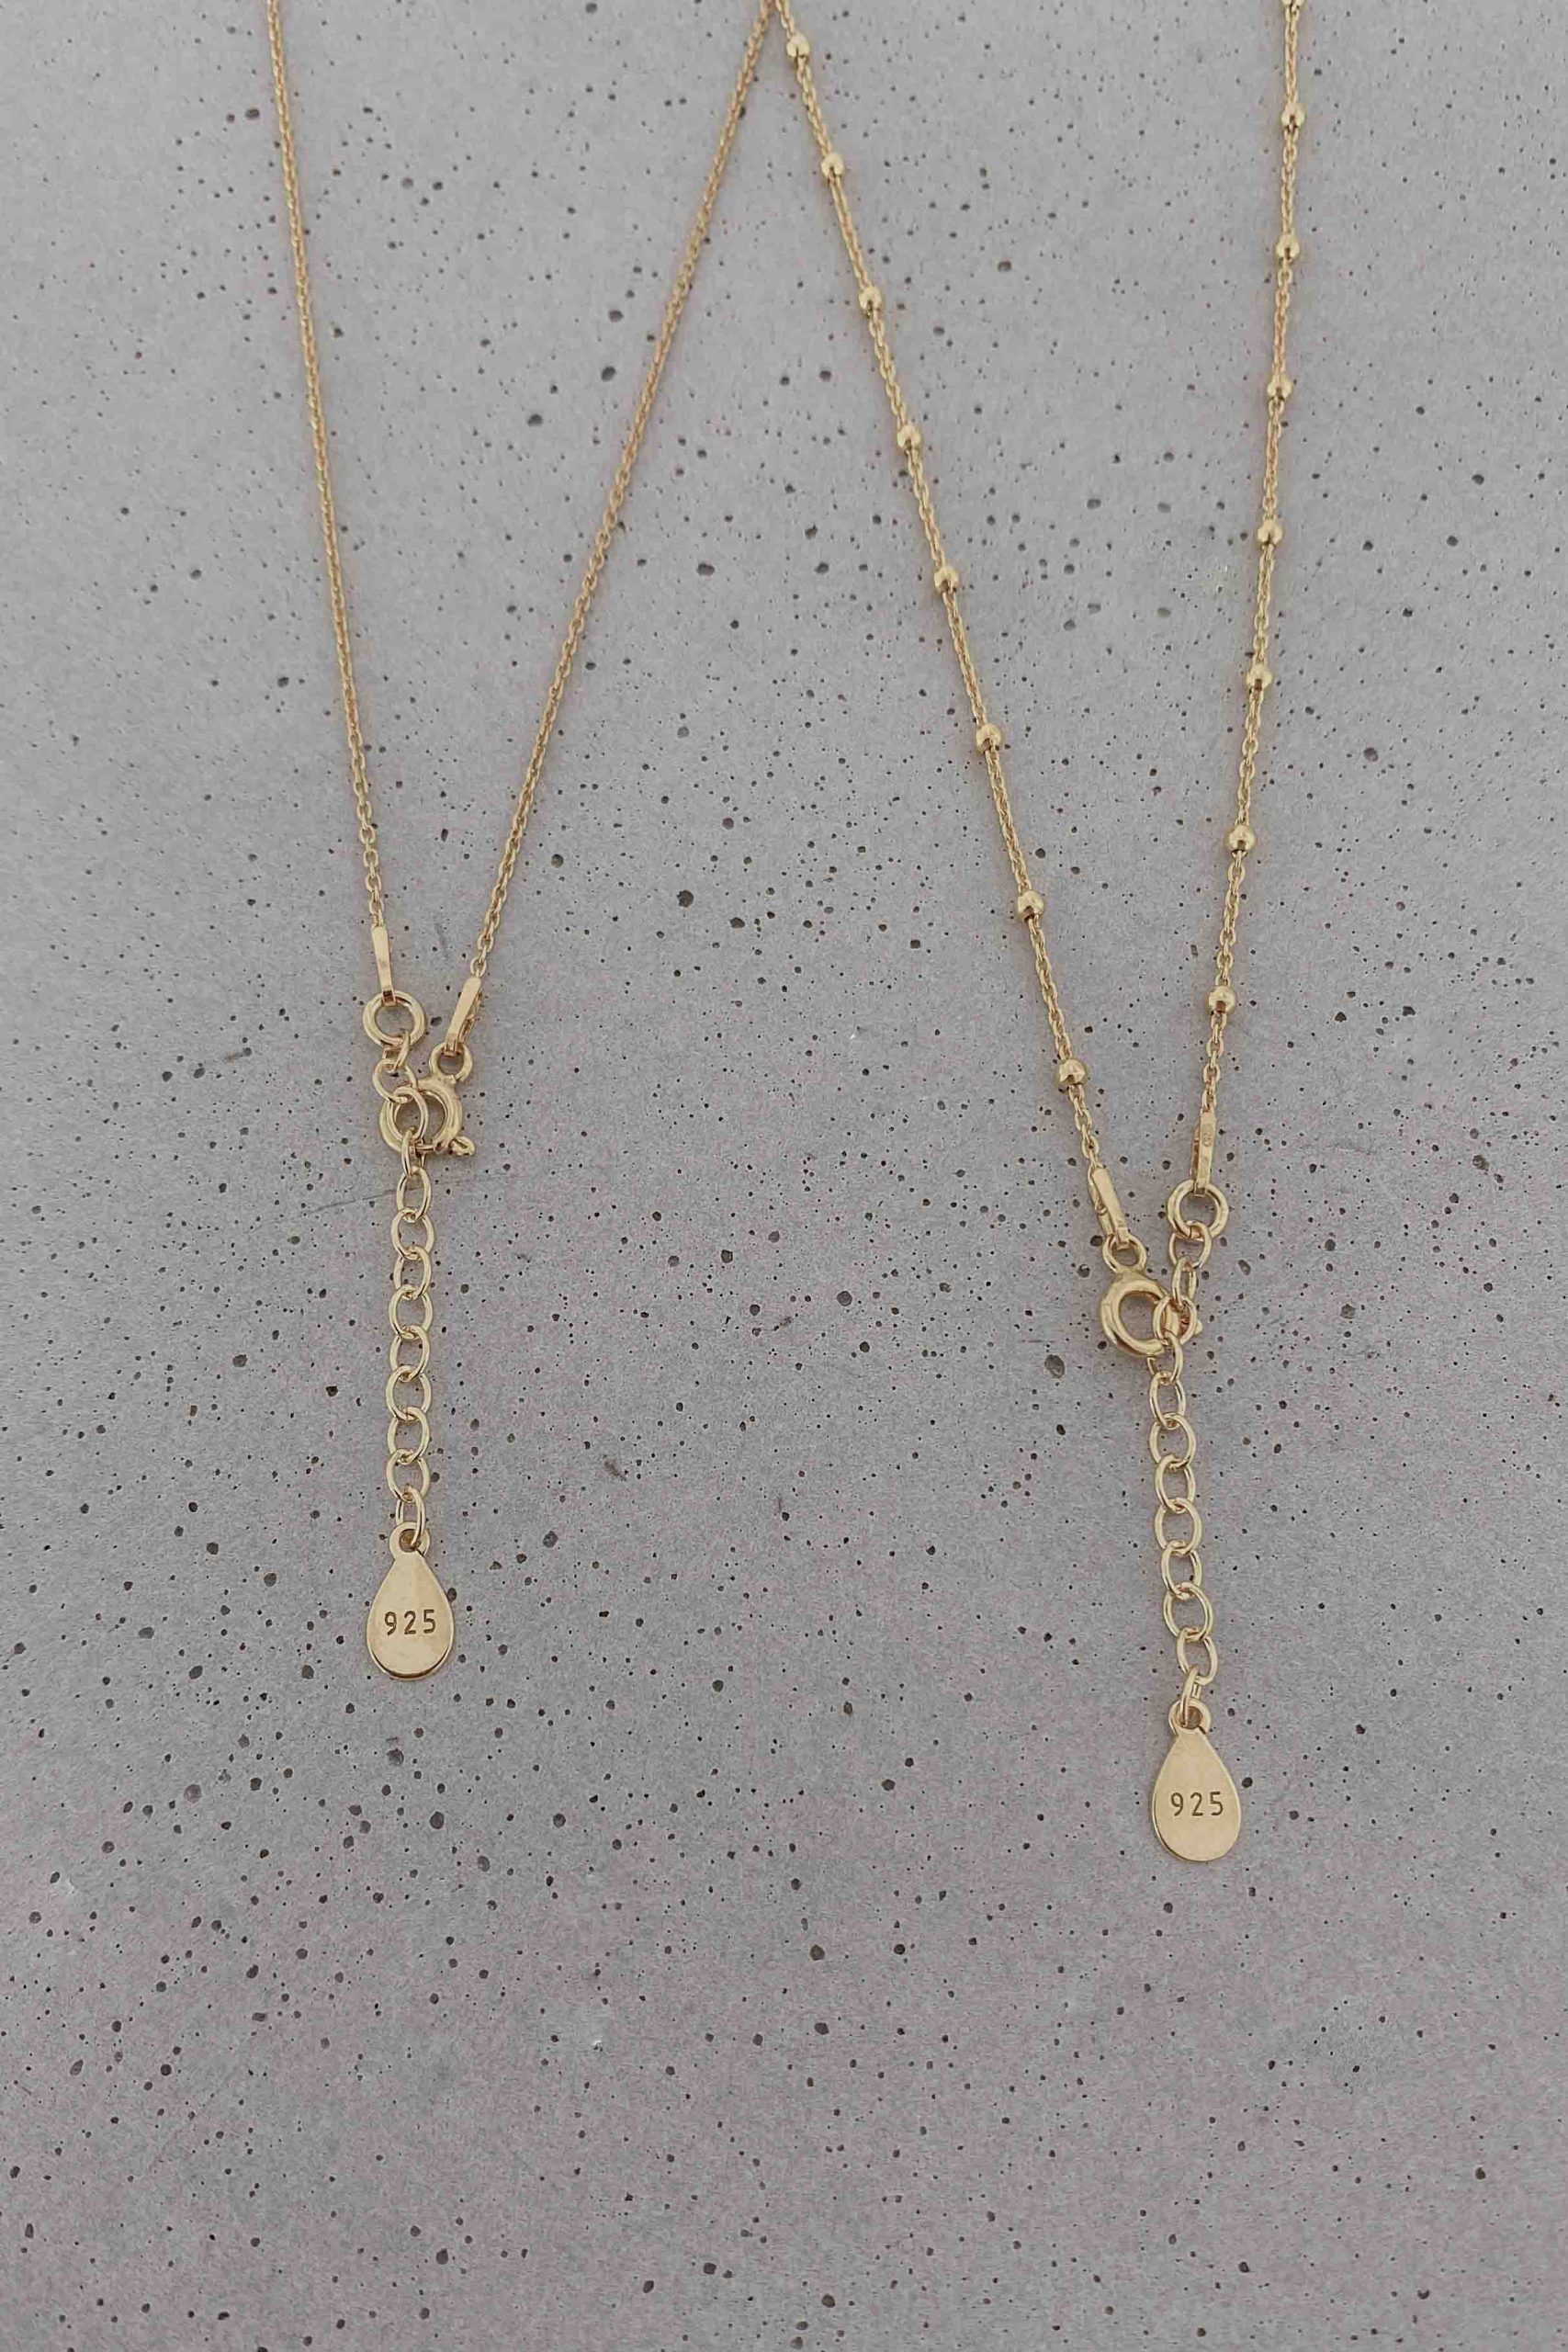 Halskette mit Gravur & Herzanhänger (Kugelkette) - Perlenbräute -  handgemachter Brautschmuck